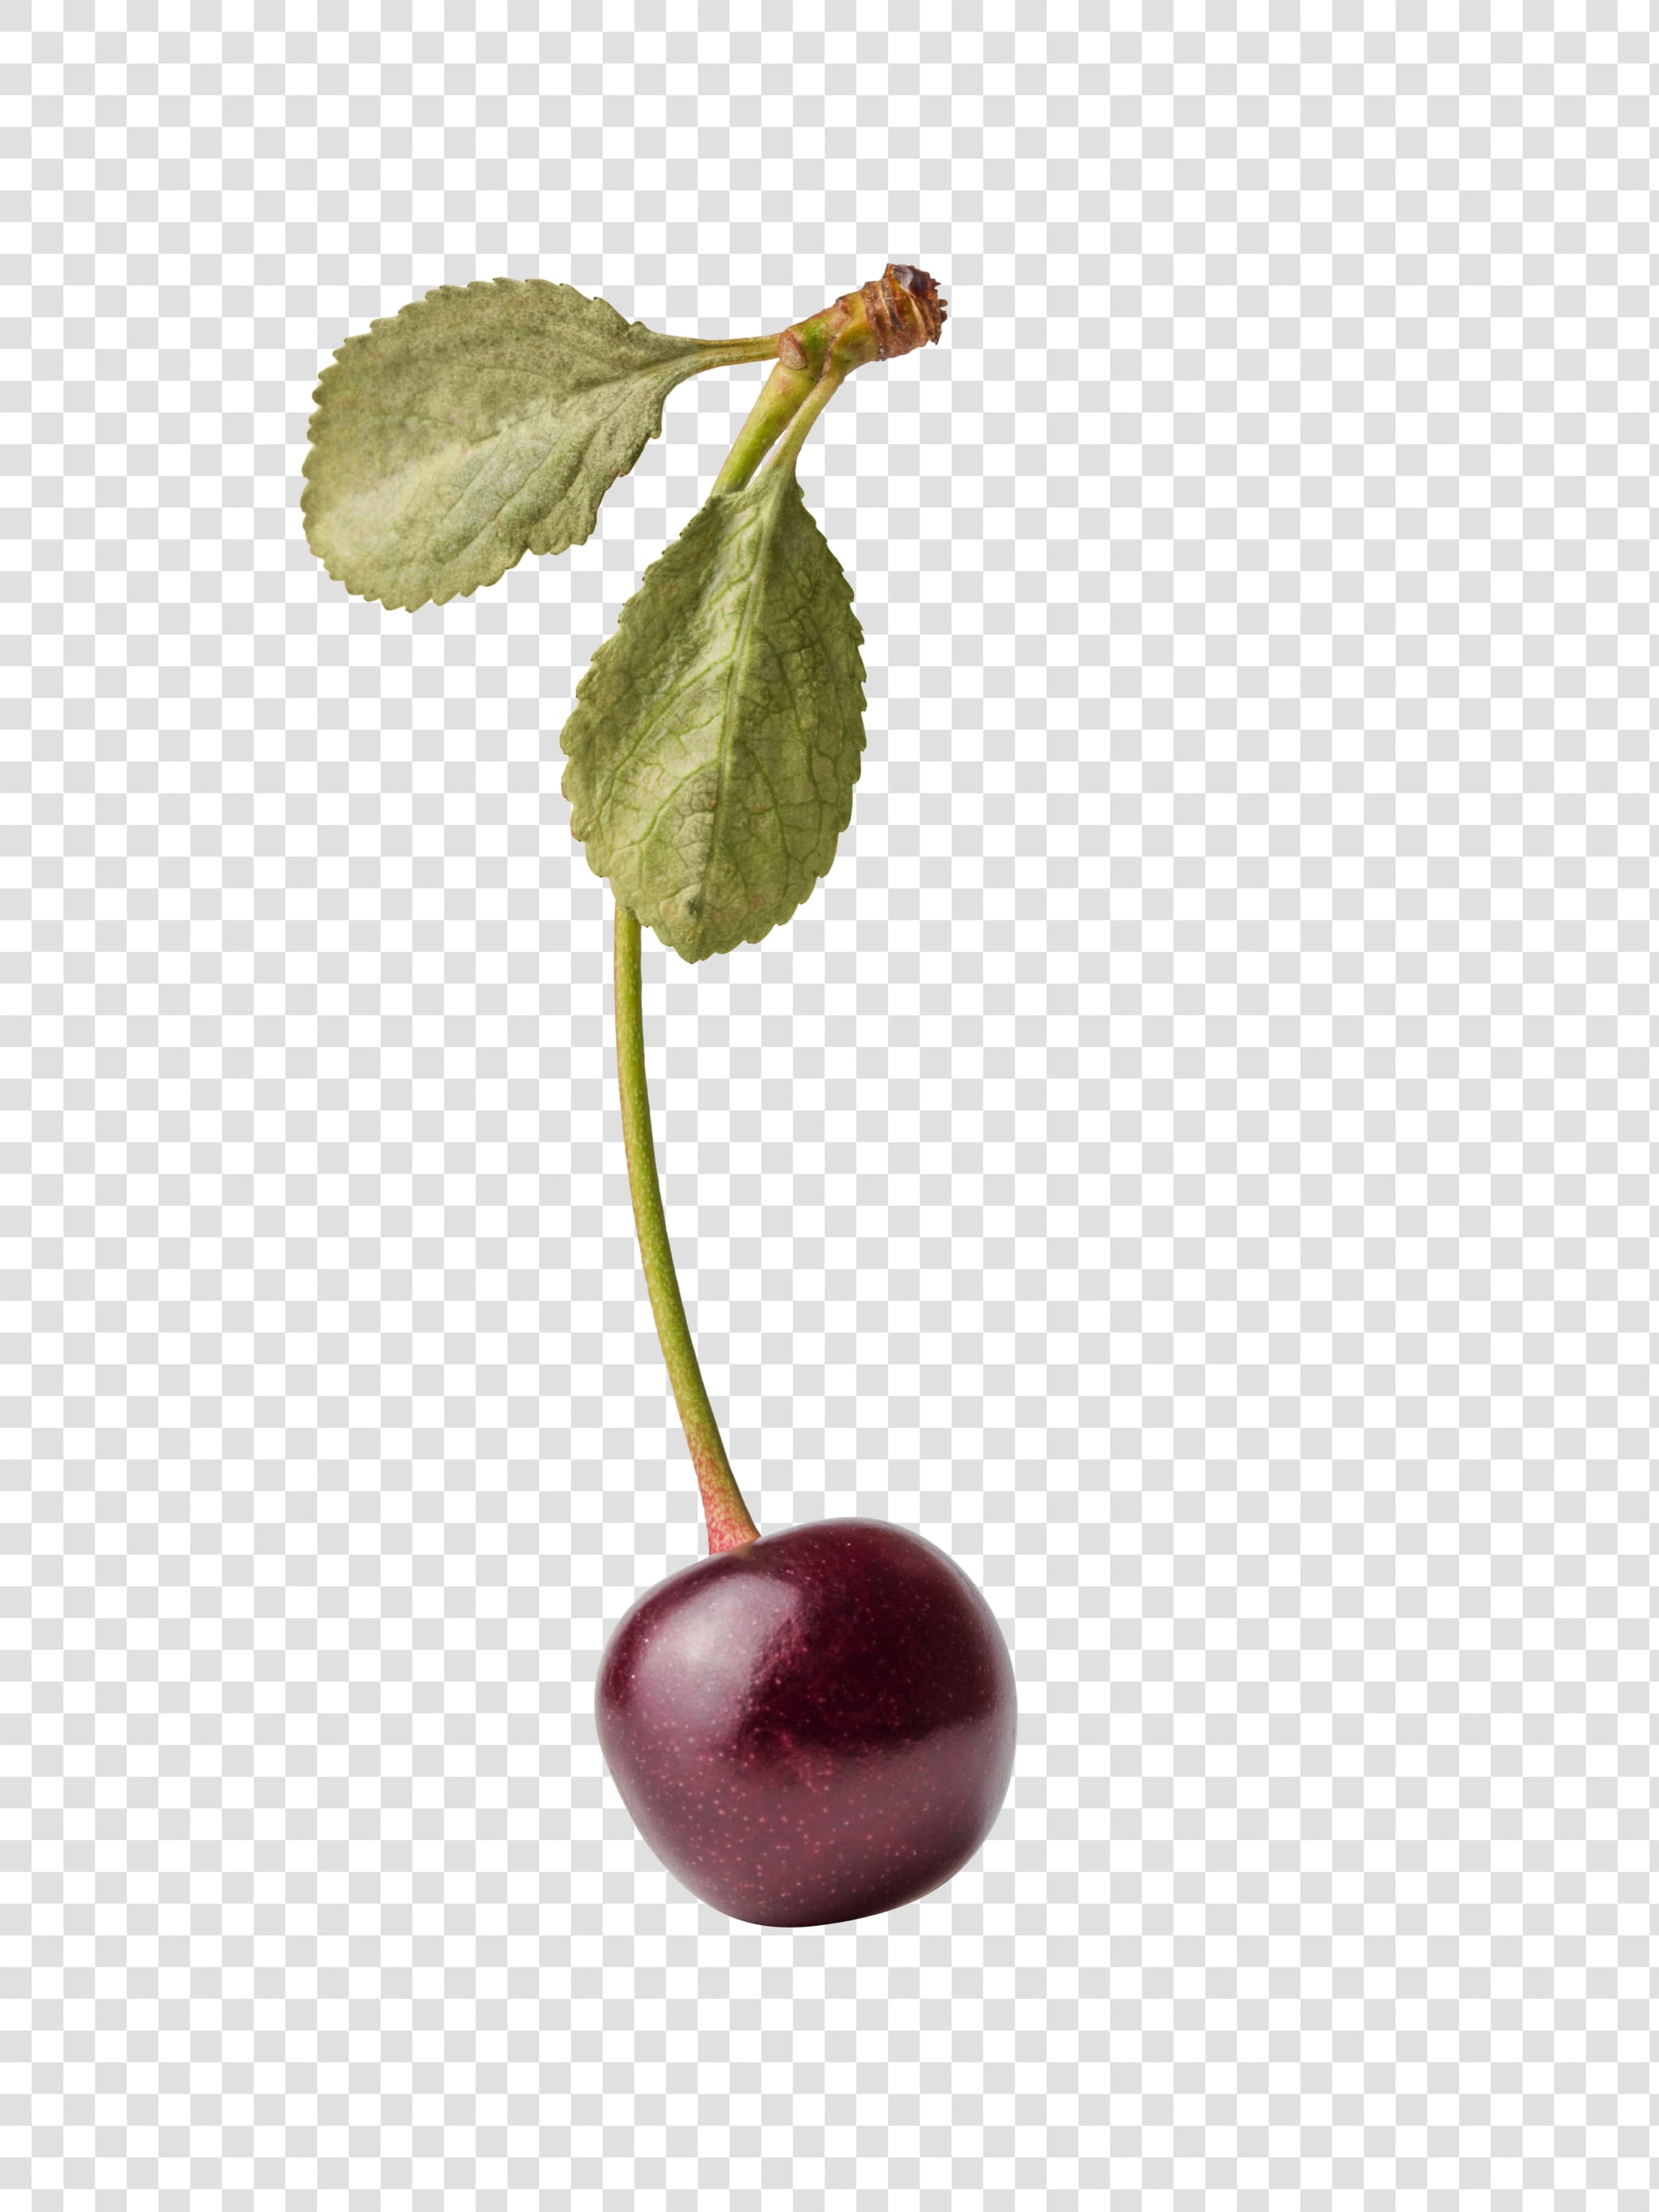 Cherry PSD layered image